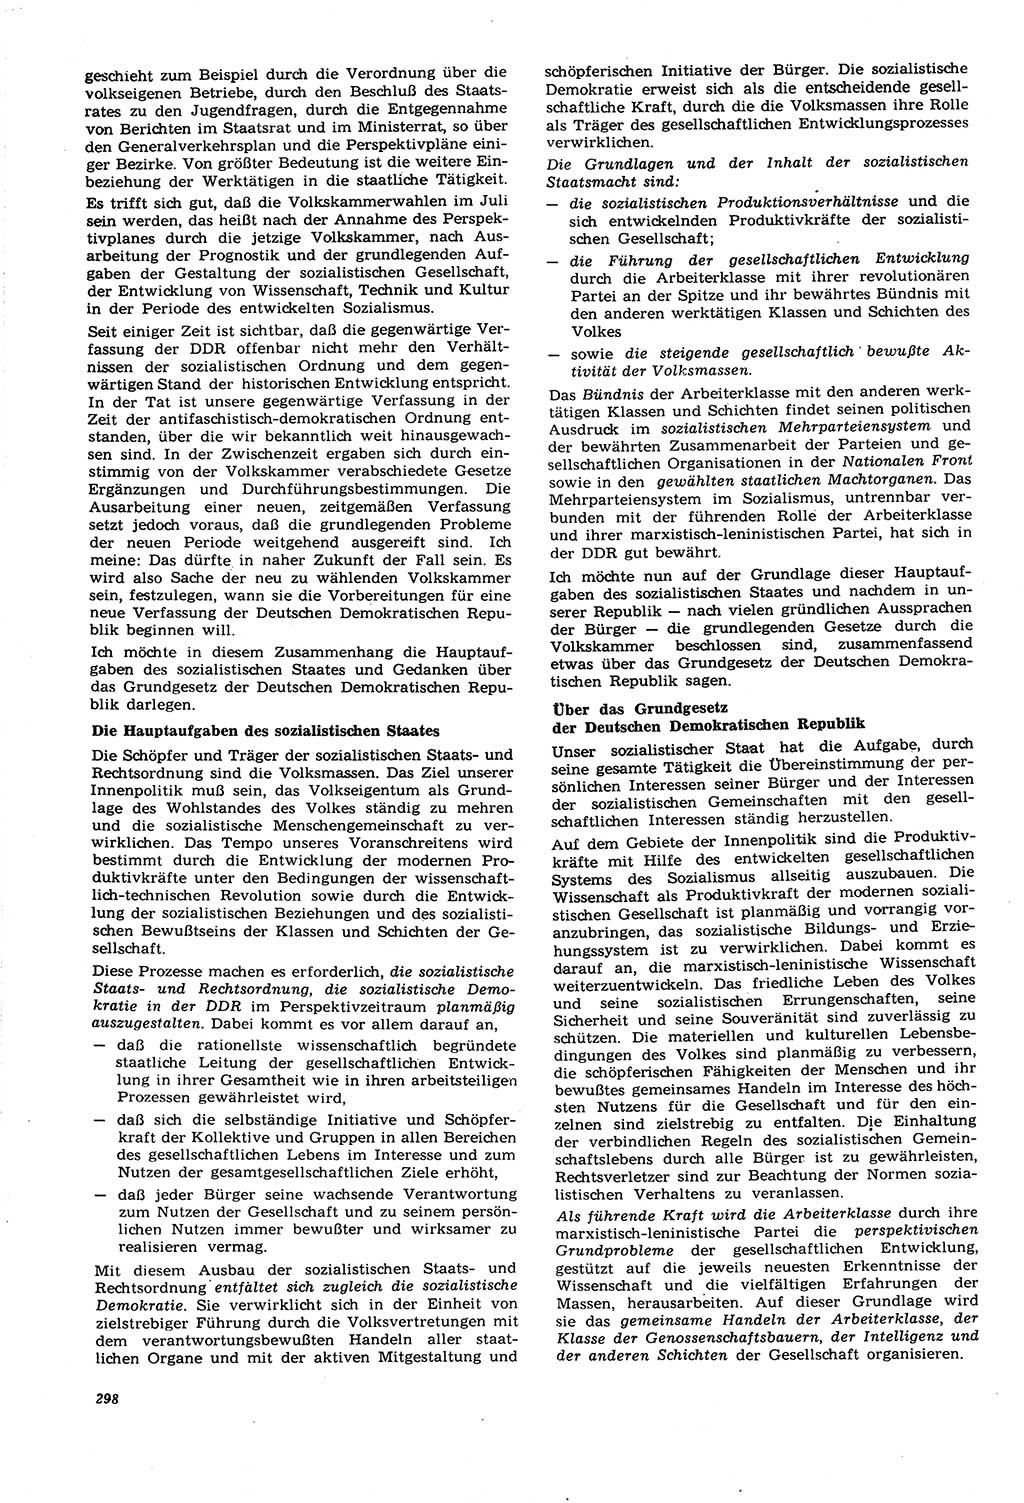 Neue Justiz (NJ), Zeitschrift für Recht und Rechtswissenschaft [Deutsche Demokratische Republik (DDR)], 21. Jahrgang 1967, Seite 298 (NJ DDR 1967, S. 298)